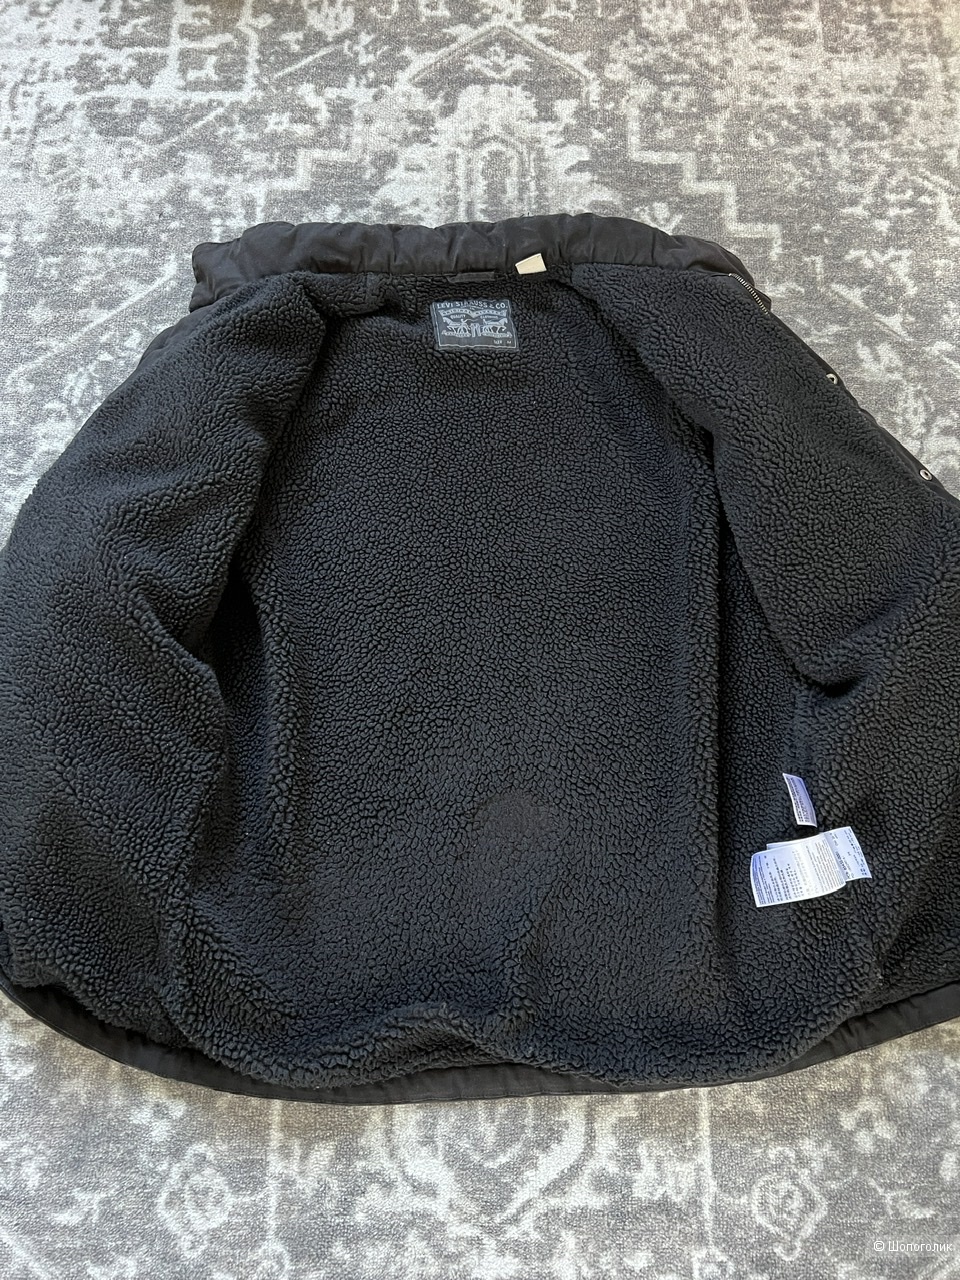 Куртка Levi’s M-65, размер M